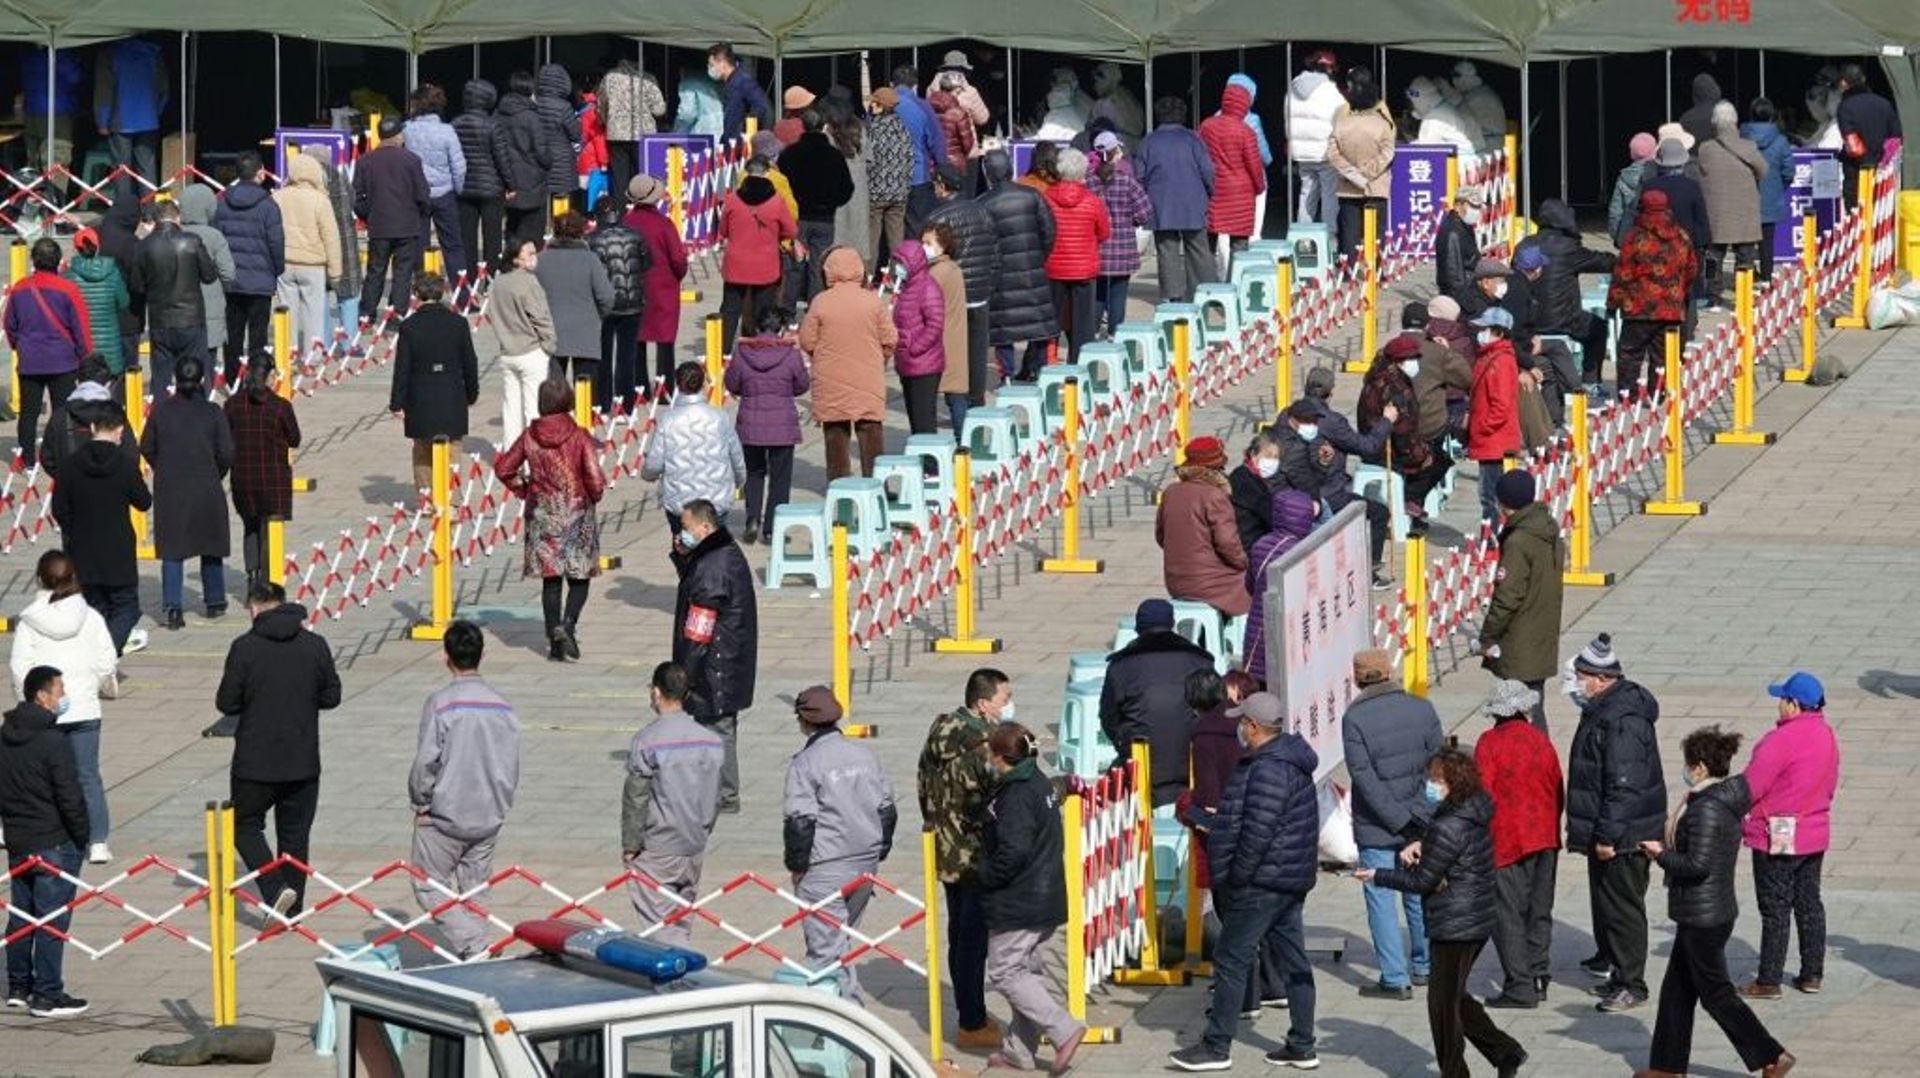 Les queues se forment pour passer les tests covid, à Yantai, dans la province de Shandong, le 14 mars 2022